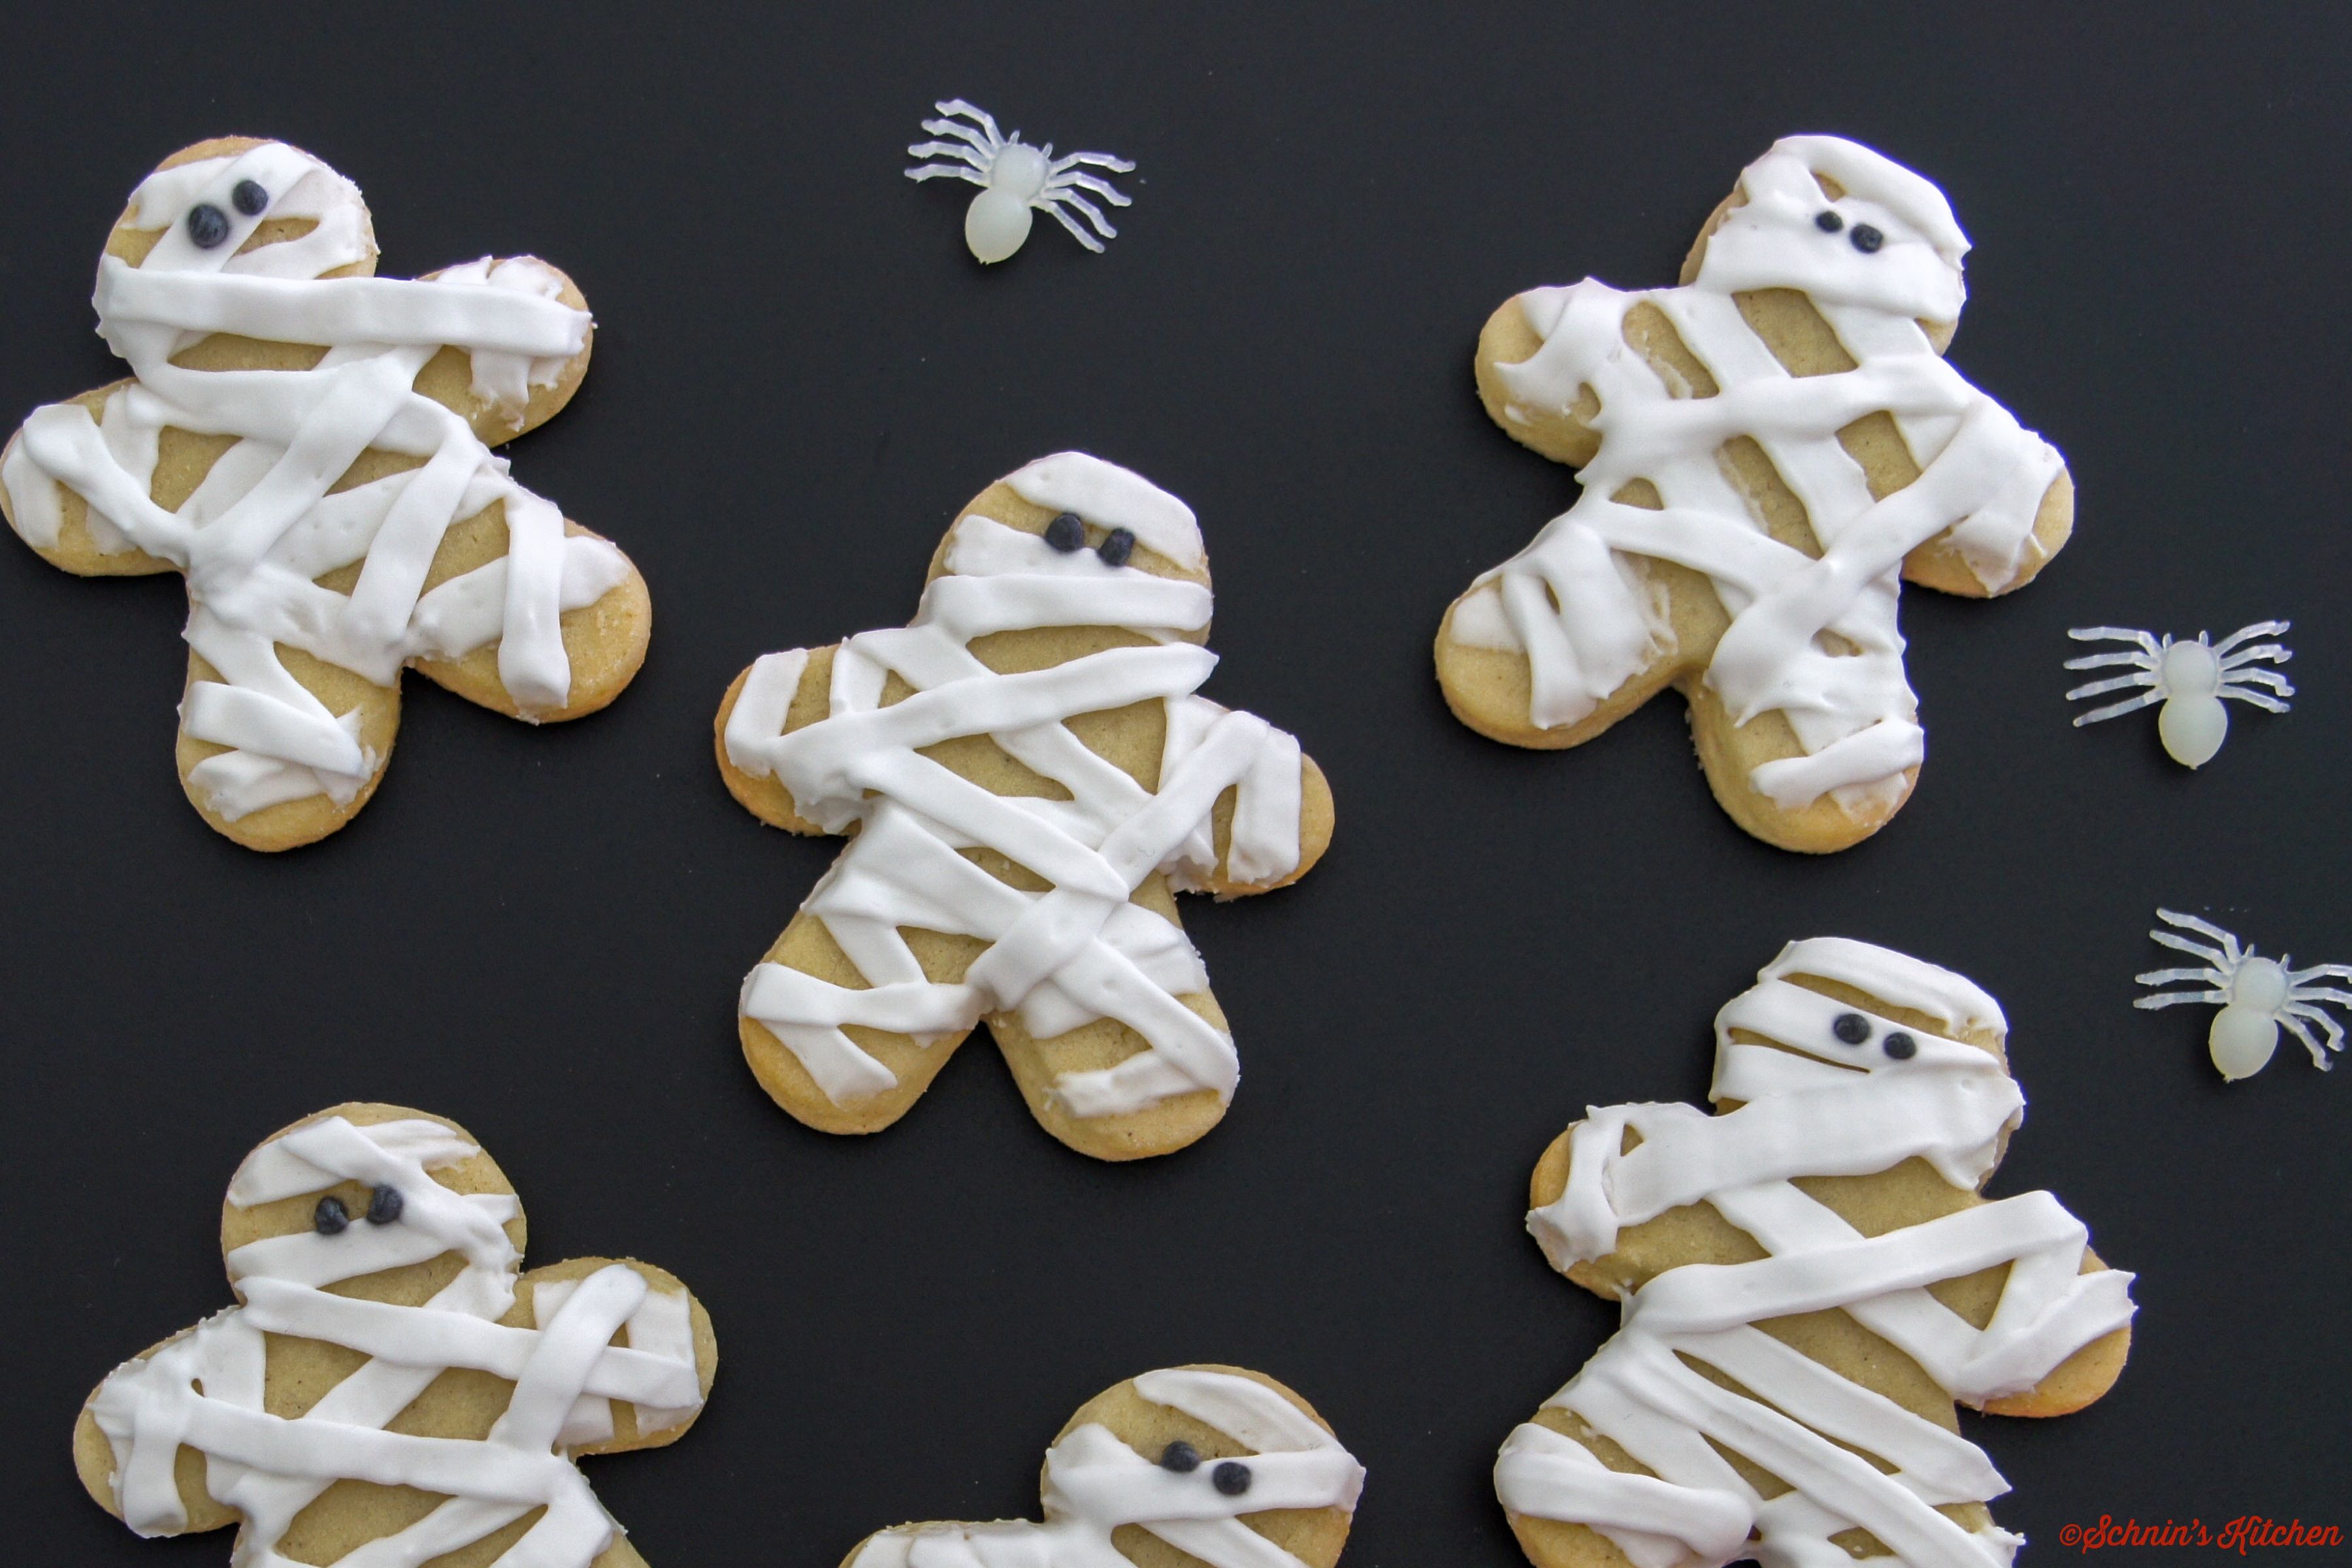 Gruselig-schöne Mumien-Cookies für Halloween mit Royal Icing Glasur - www.schninskitchen.de